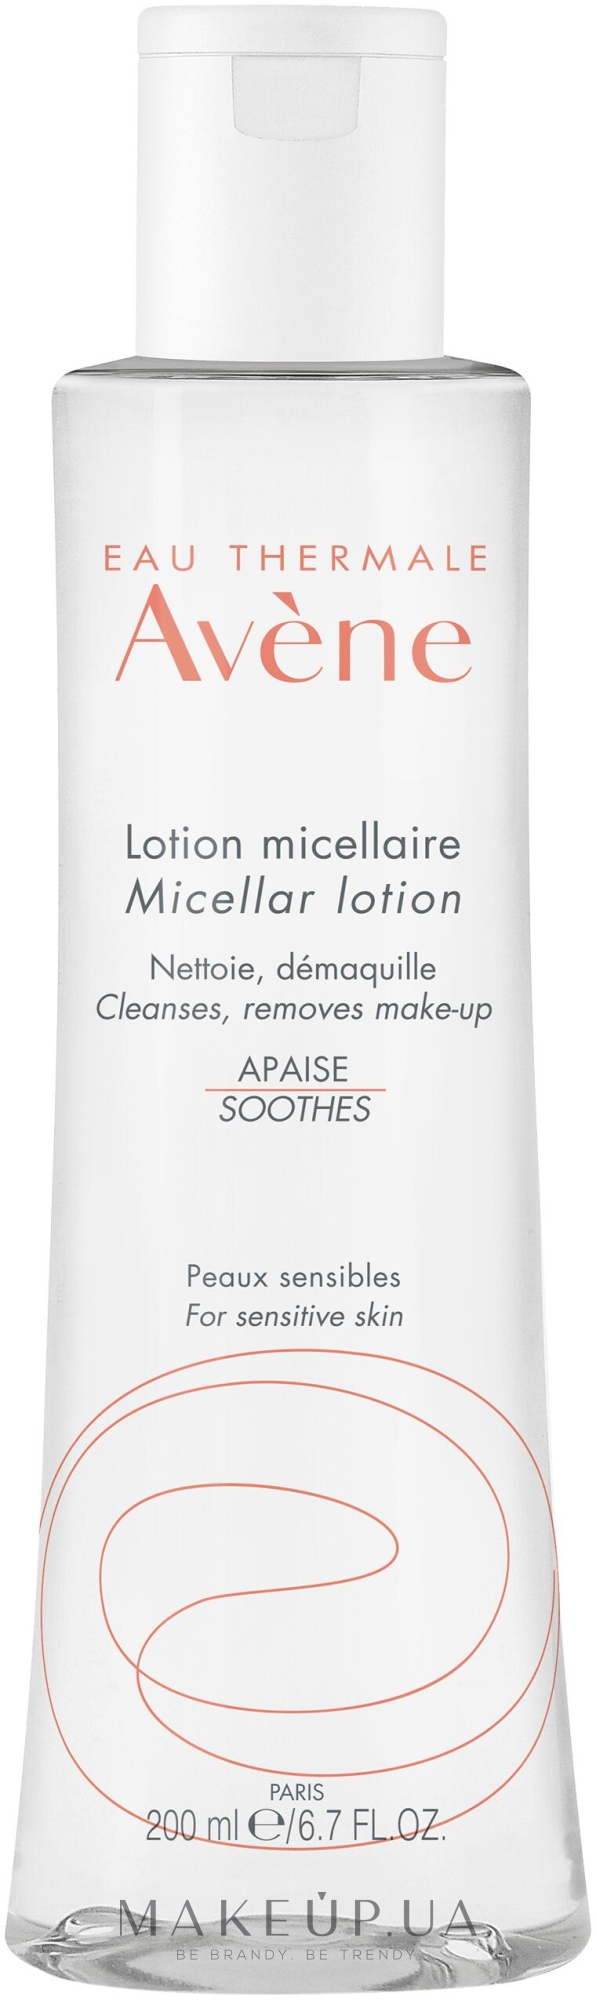 Лосьйон міцелярний для очищення та зняття макіяжу - Avene Micellar Lotion For Cleaning And Removing Make-Up — фото 200ml